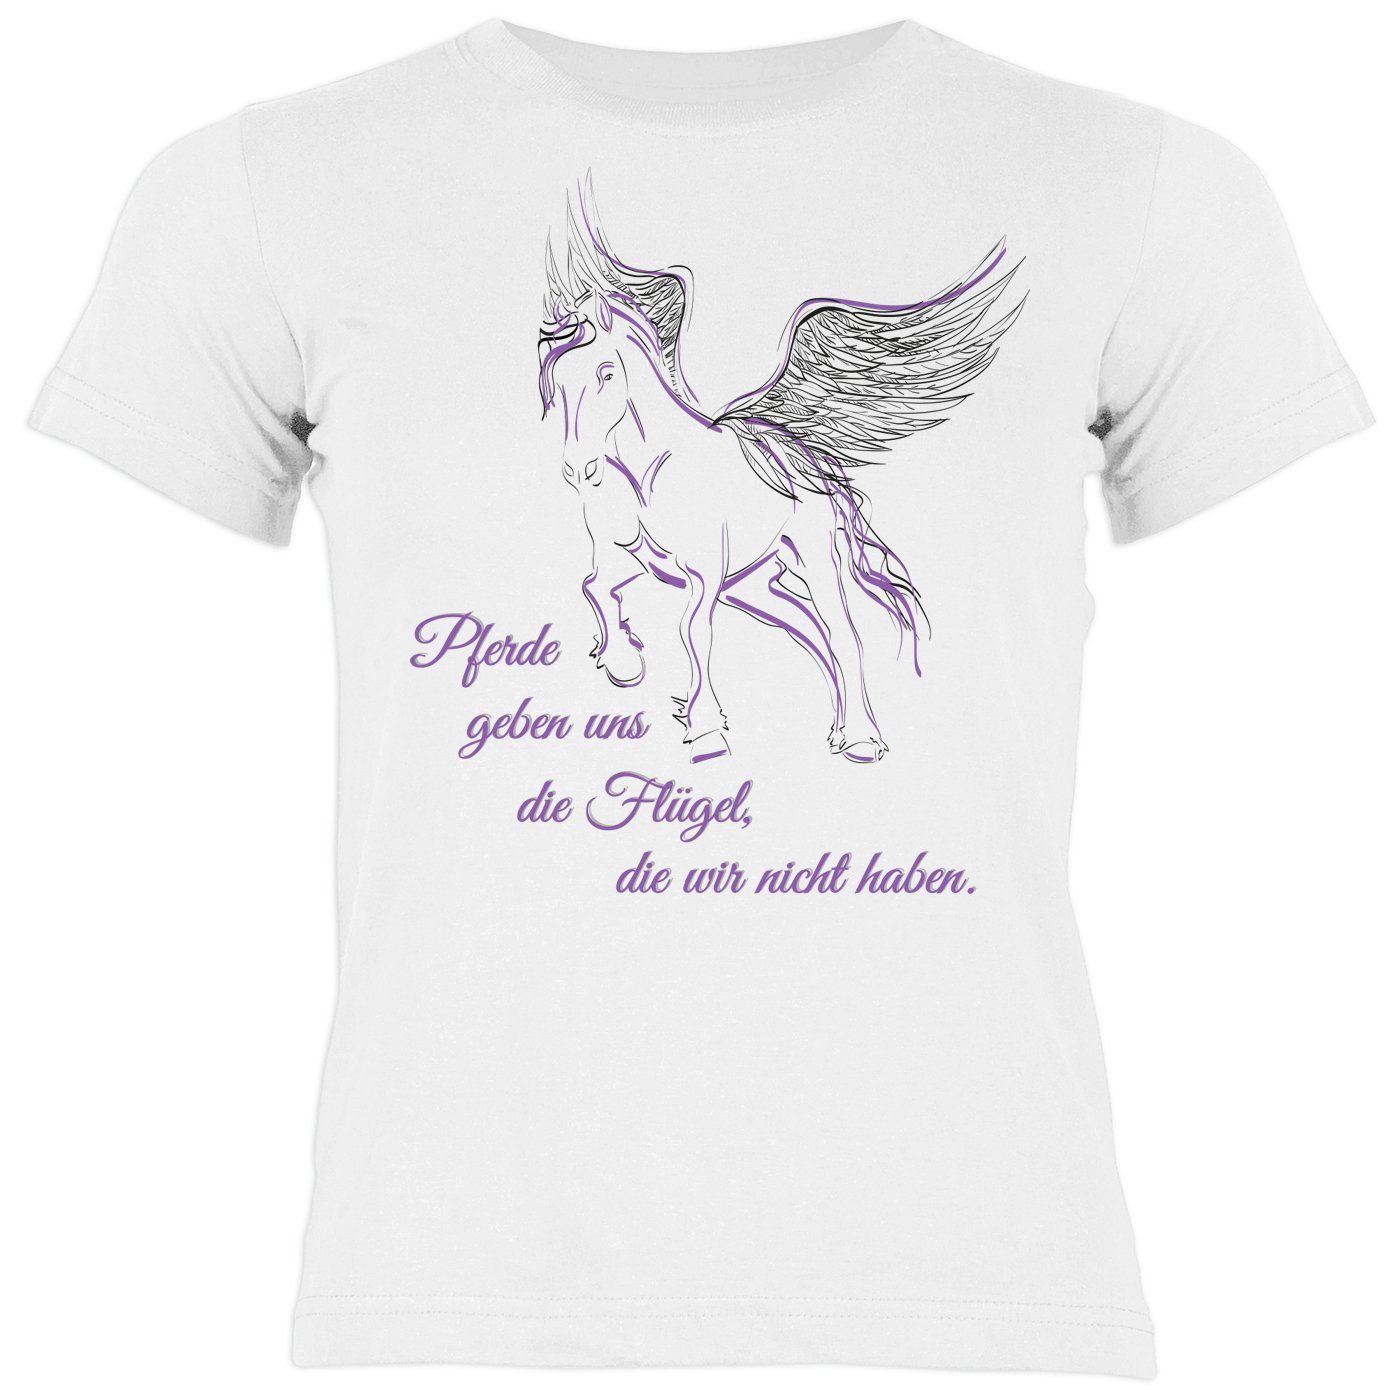 T-Shirt Kindershirt Tini Pferde Sprüche uns Mädchen wir die Motiv haben Pferde Shirts - Flügel, Pferde geben : nicht die